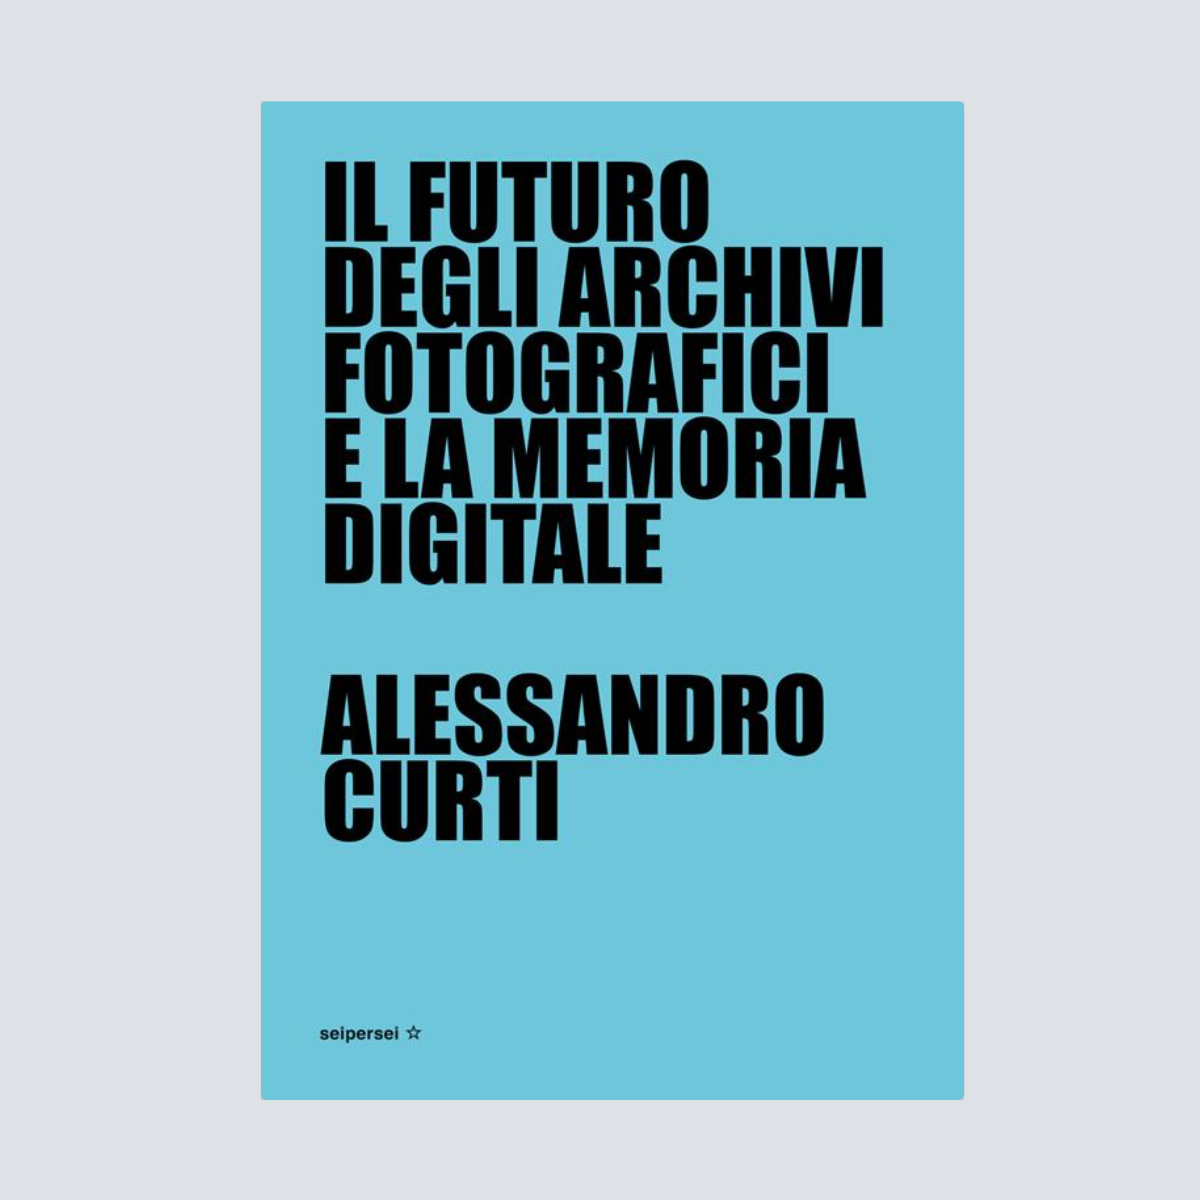 "Il futuro degli archivi fotografici e la memoria digitale" - Alessandro Curti